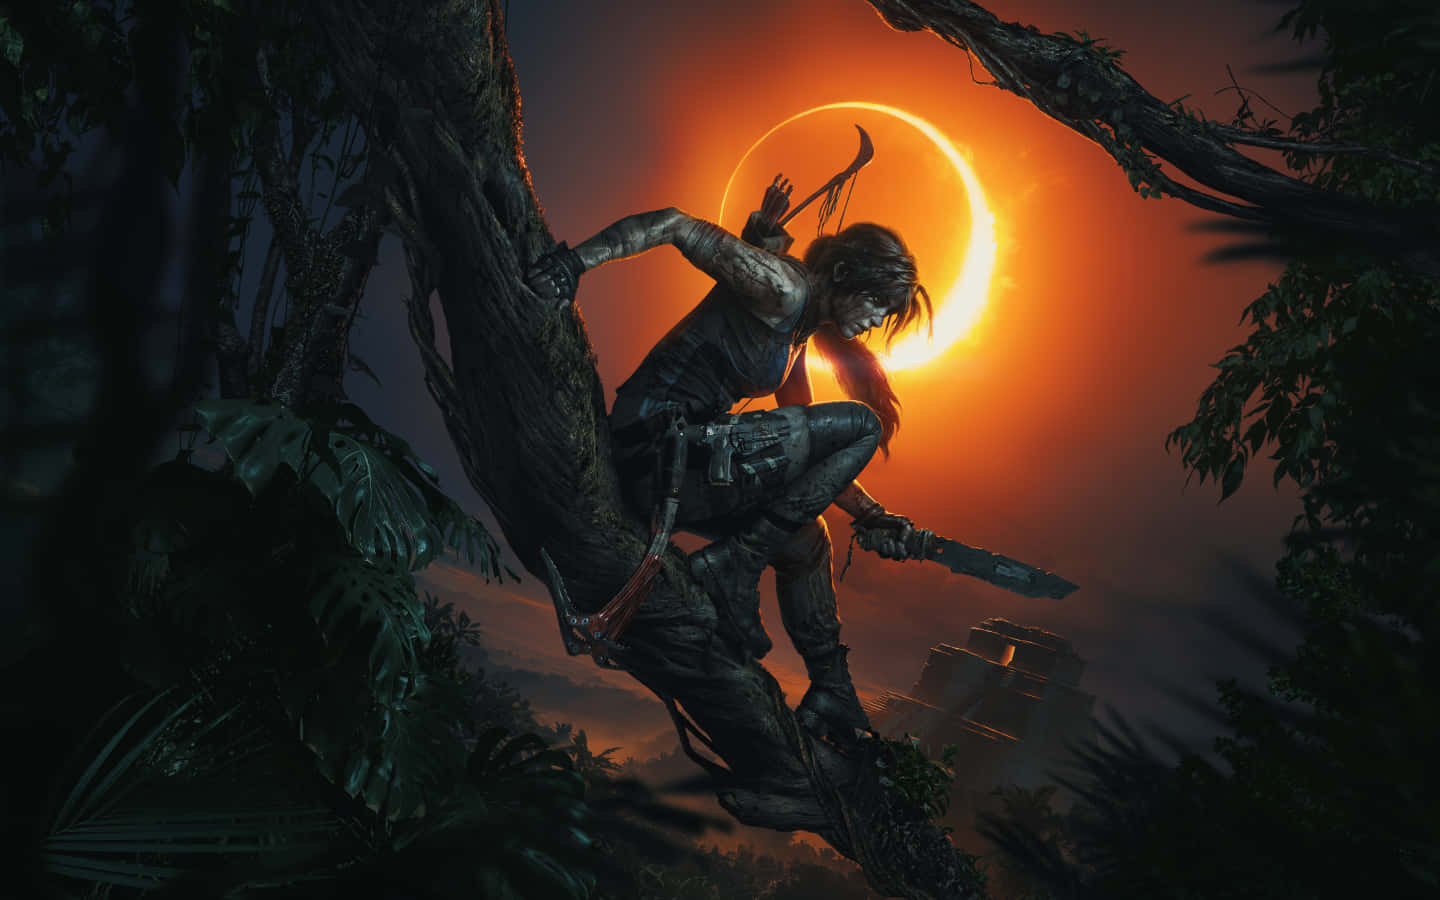 Gördig Redo För Ett Episkt Äventyr Med Lara Croft I Shadow Of The Tomb Raider.